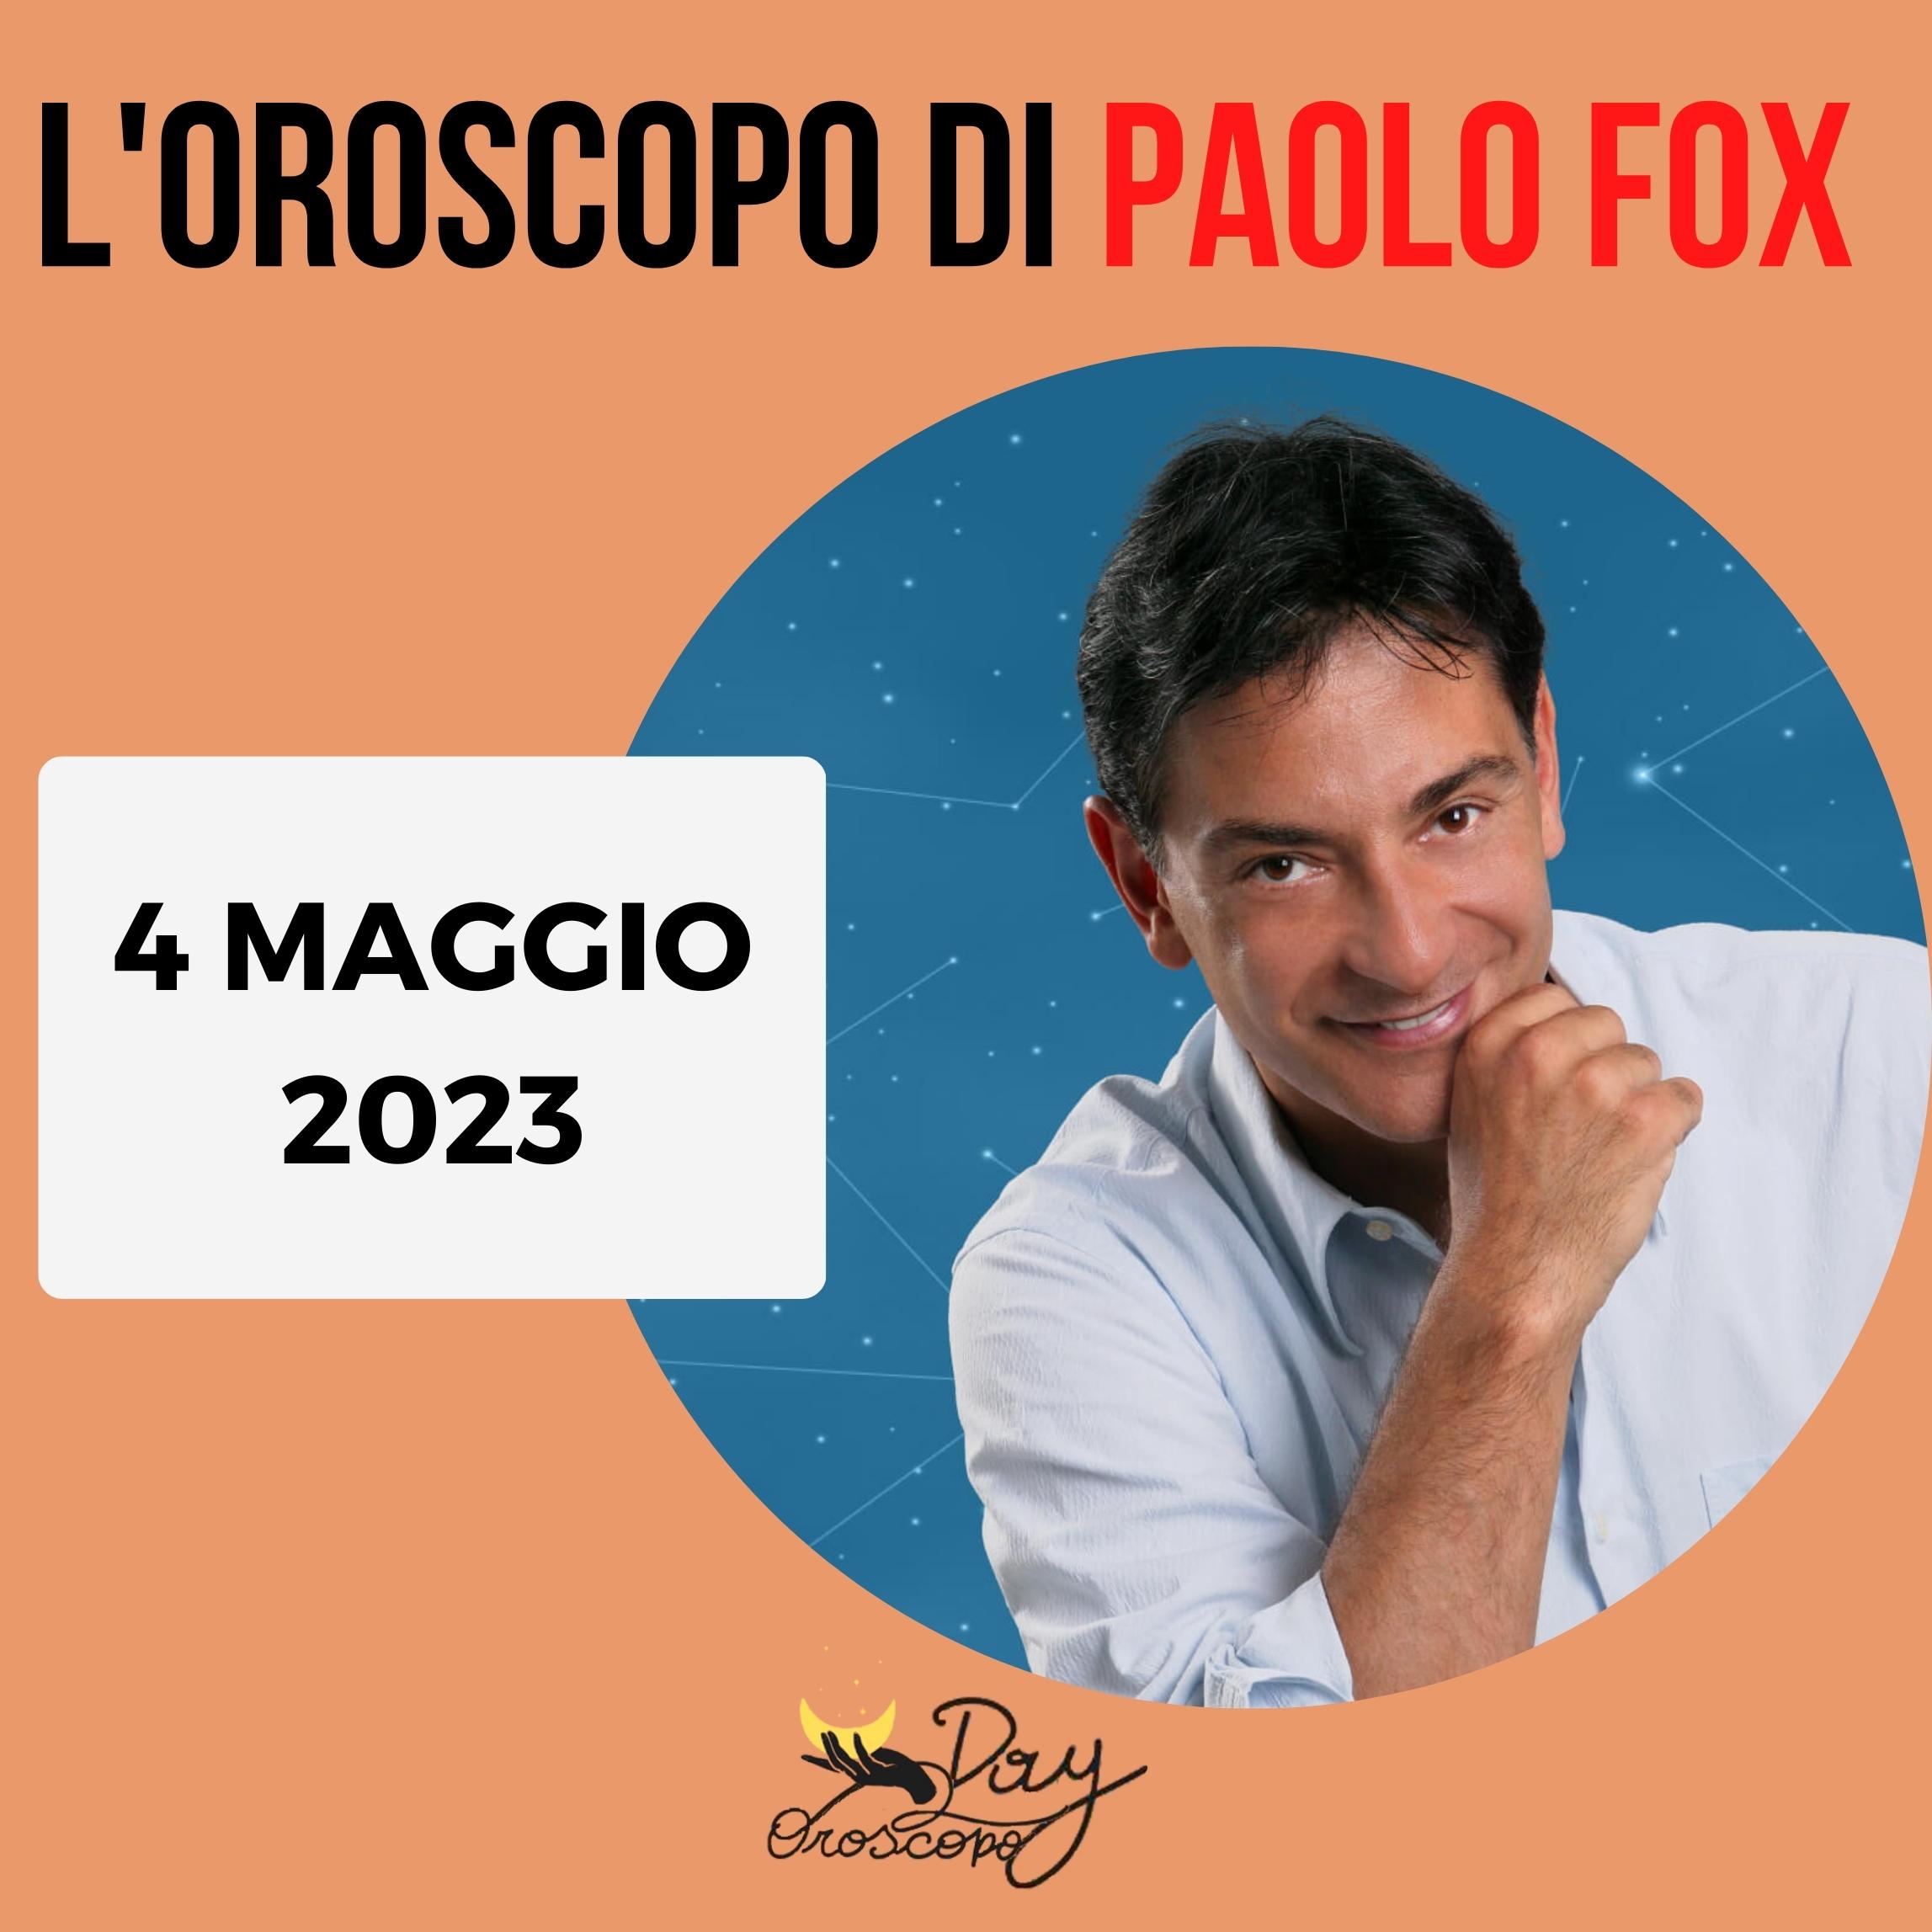 Oroscopo oggi domani Paolo Fox 4 maggio 2023